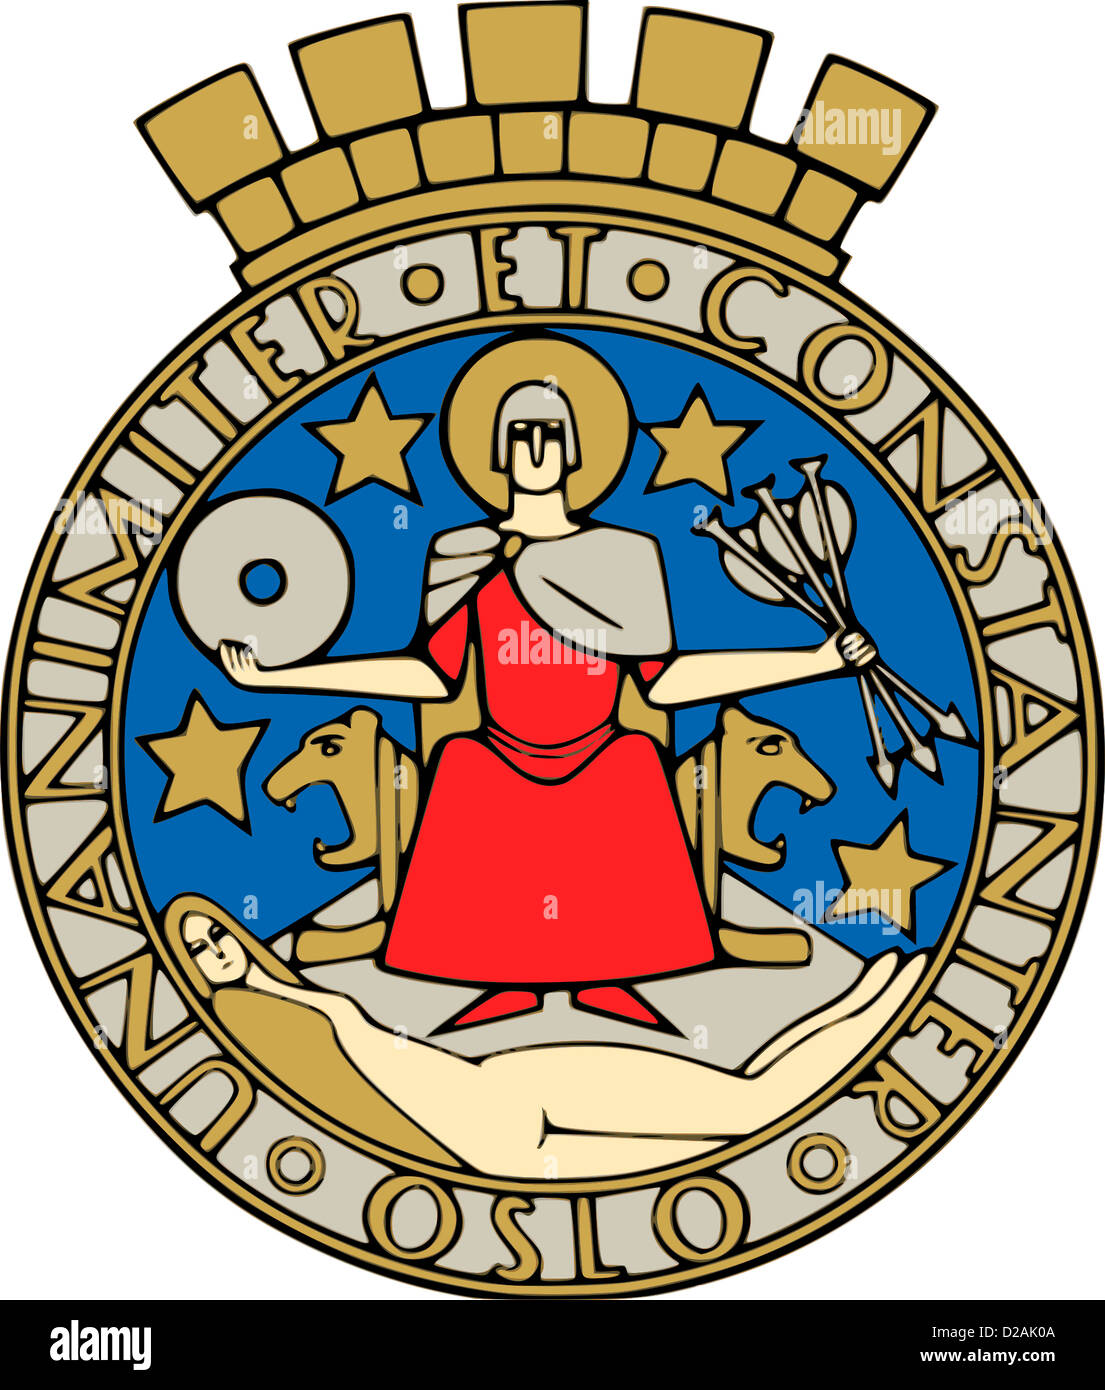 Wappen der norwegischen Hauptstadt Oslo. Stockfoto